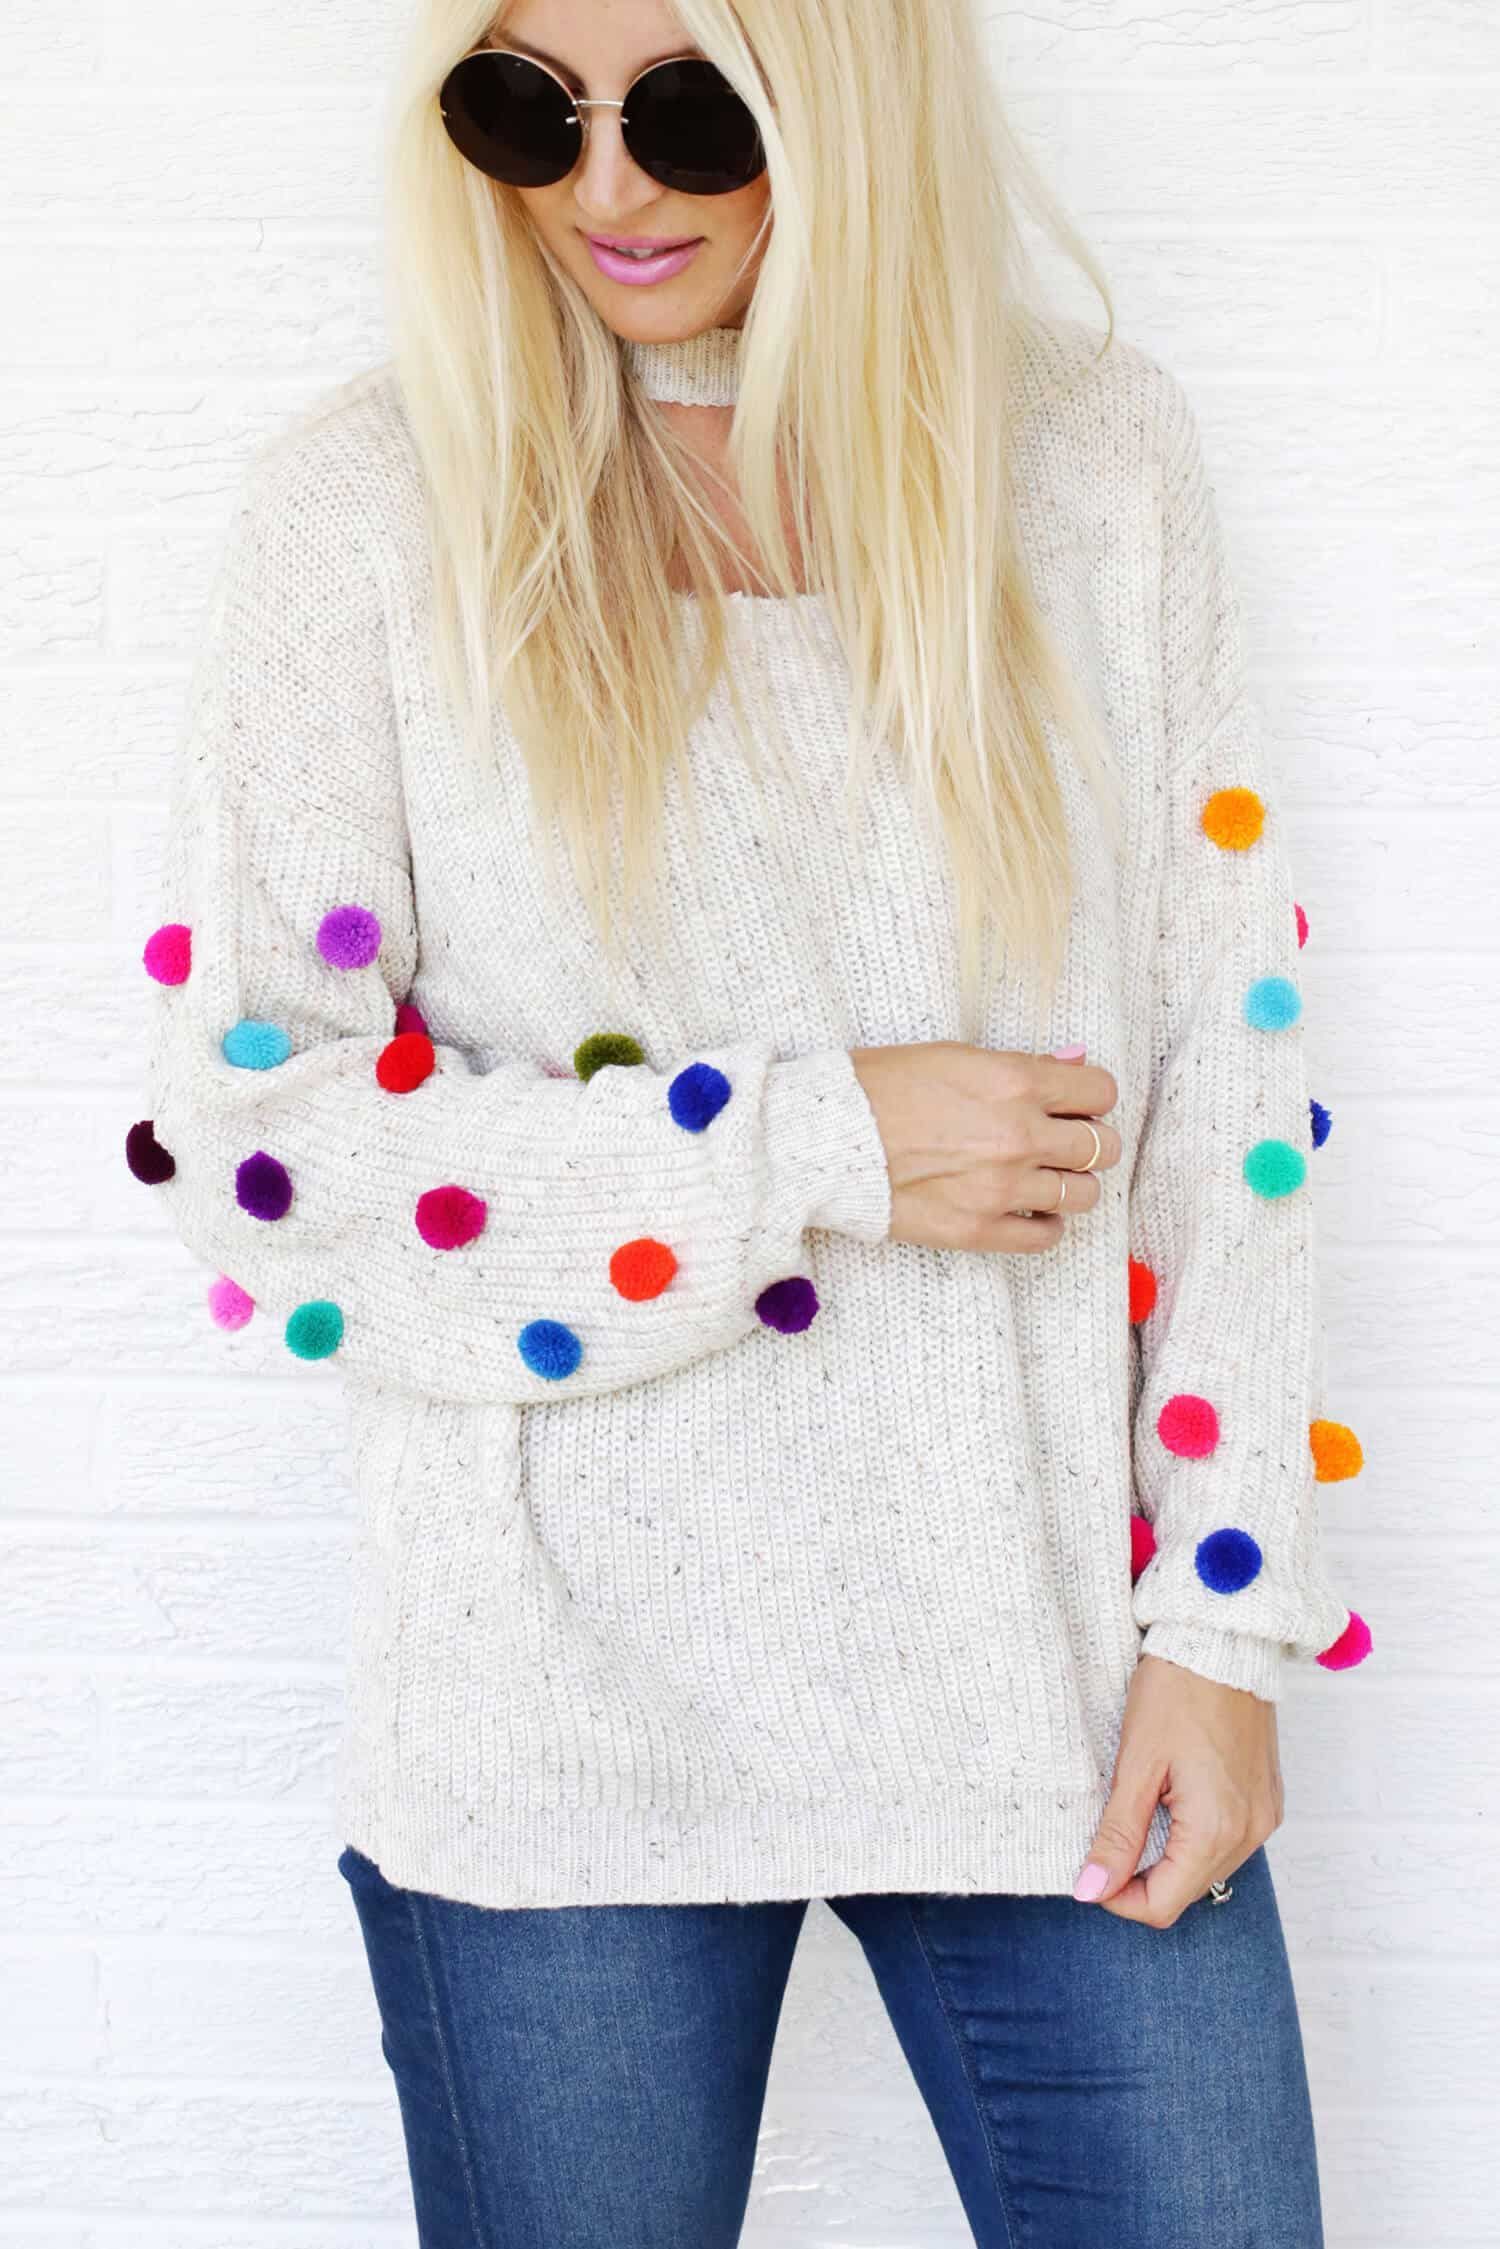 Pom Pom Sweater DIY - A Beautiful Mess - Pom Pom Sweater DIY - A Beautiful Mess -   14 diy Fashion 2019 ideas